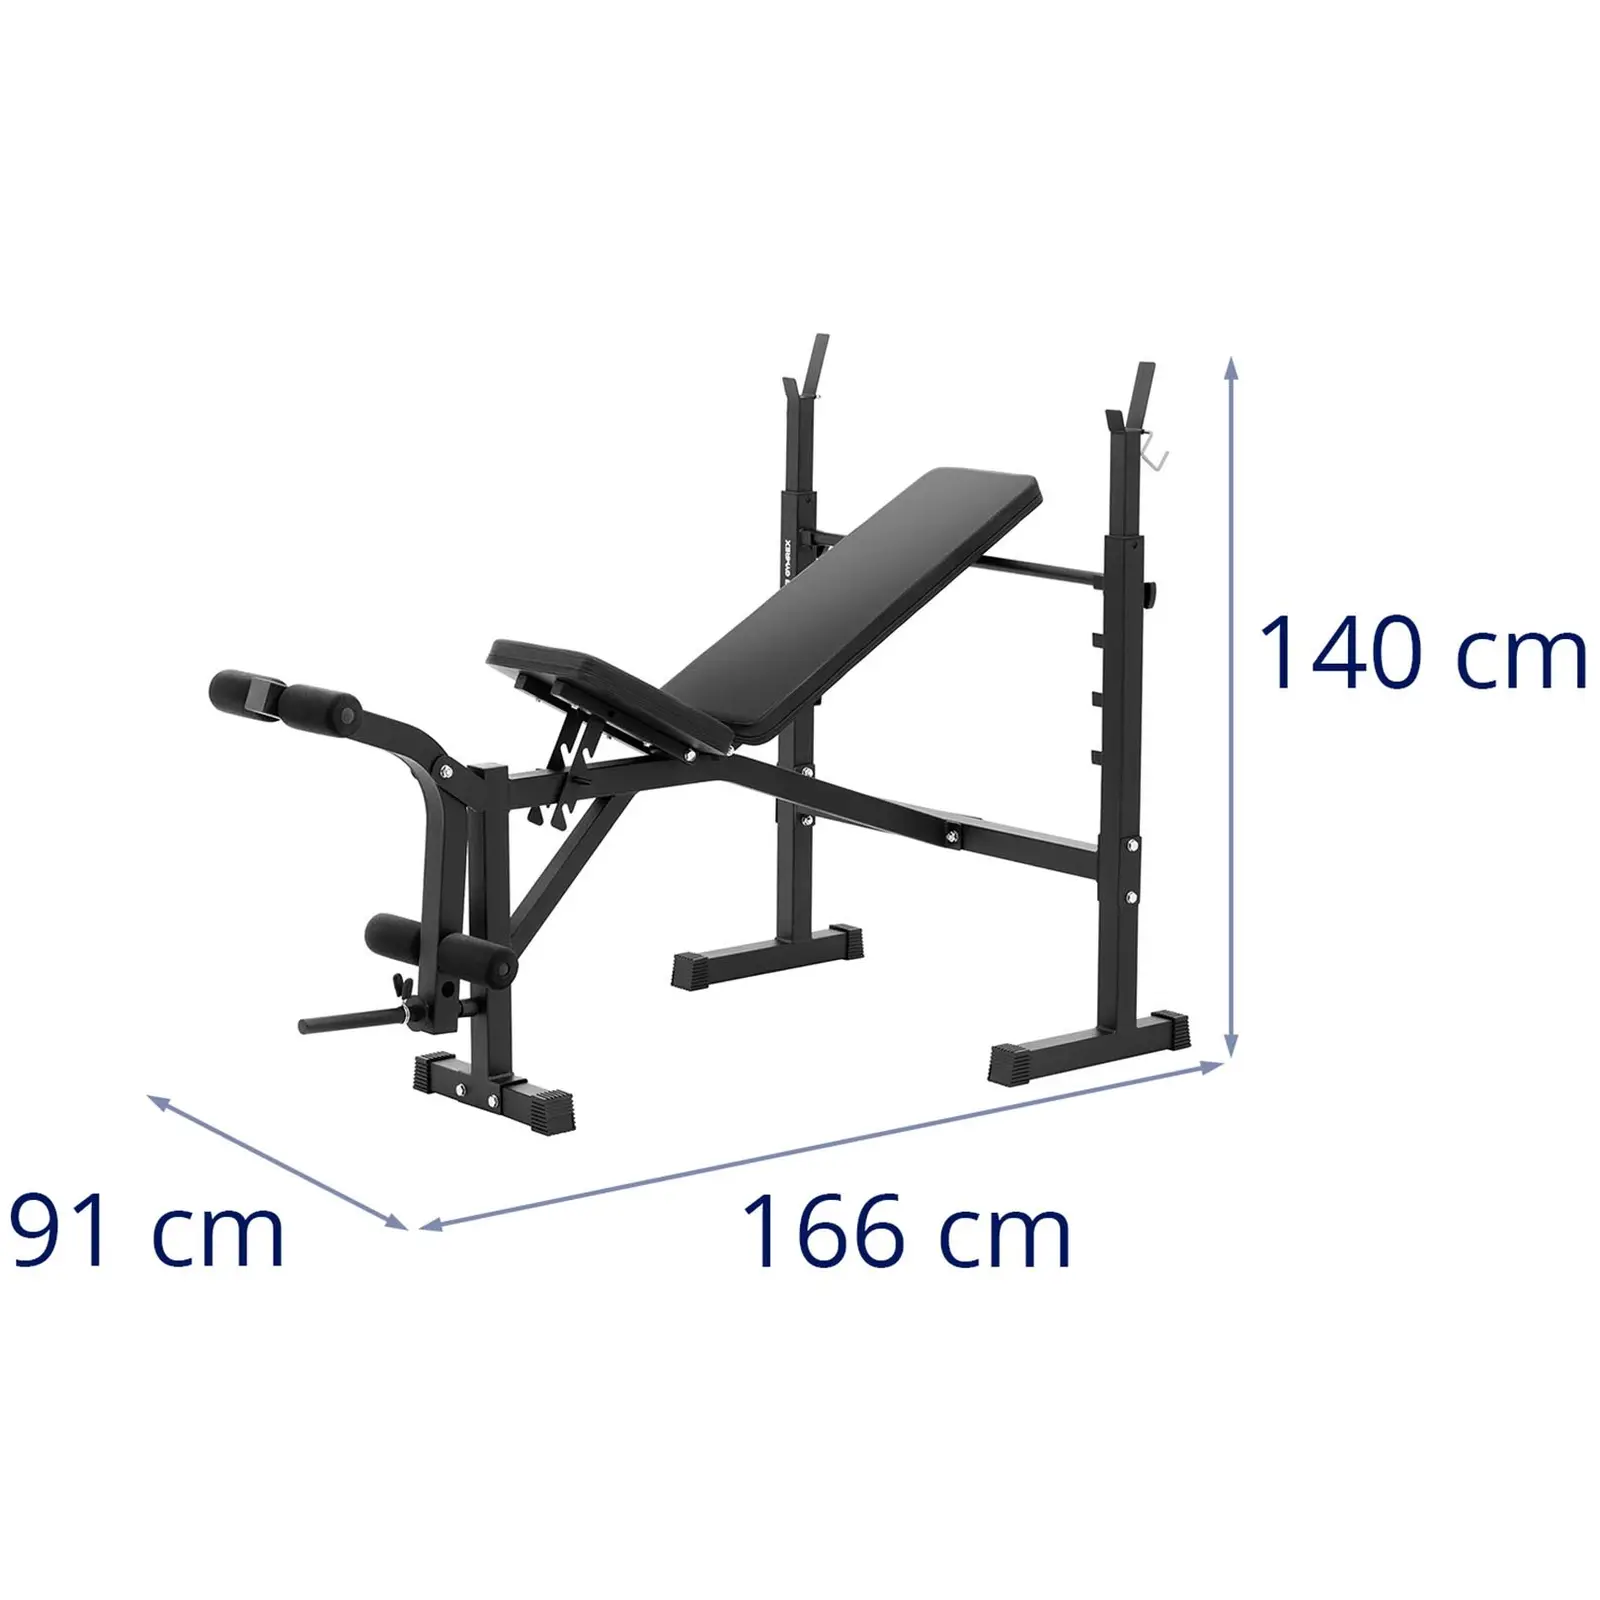 Banco de treino multifuncional - até 100 kg - ajustável - inclinação  180-152°